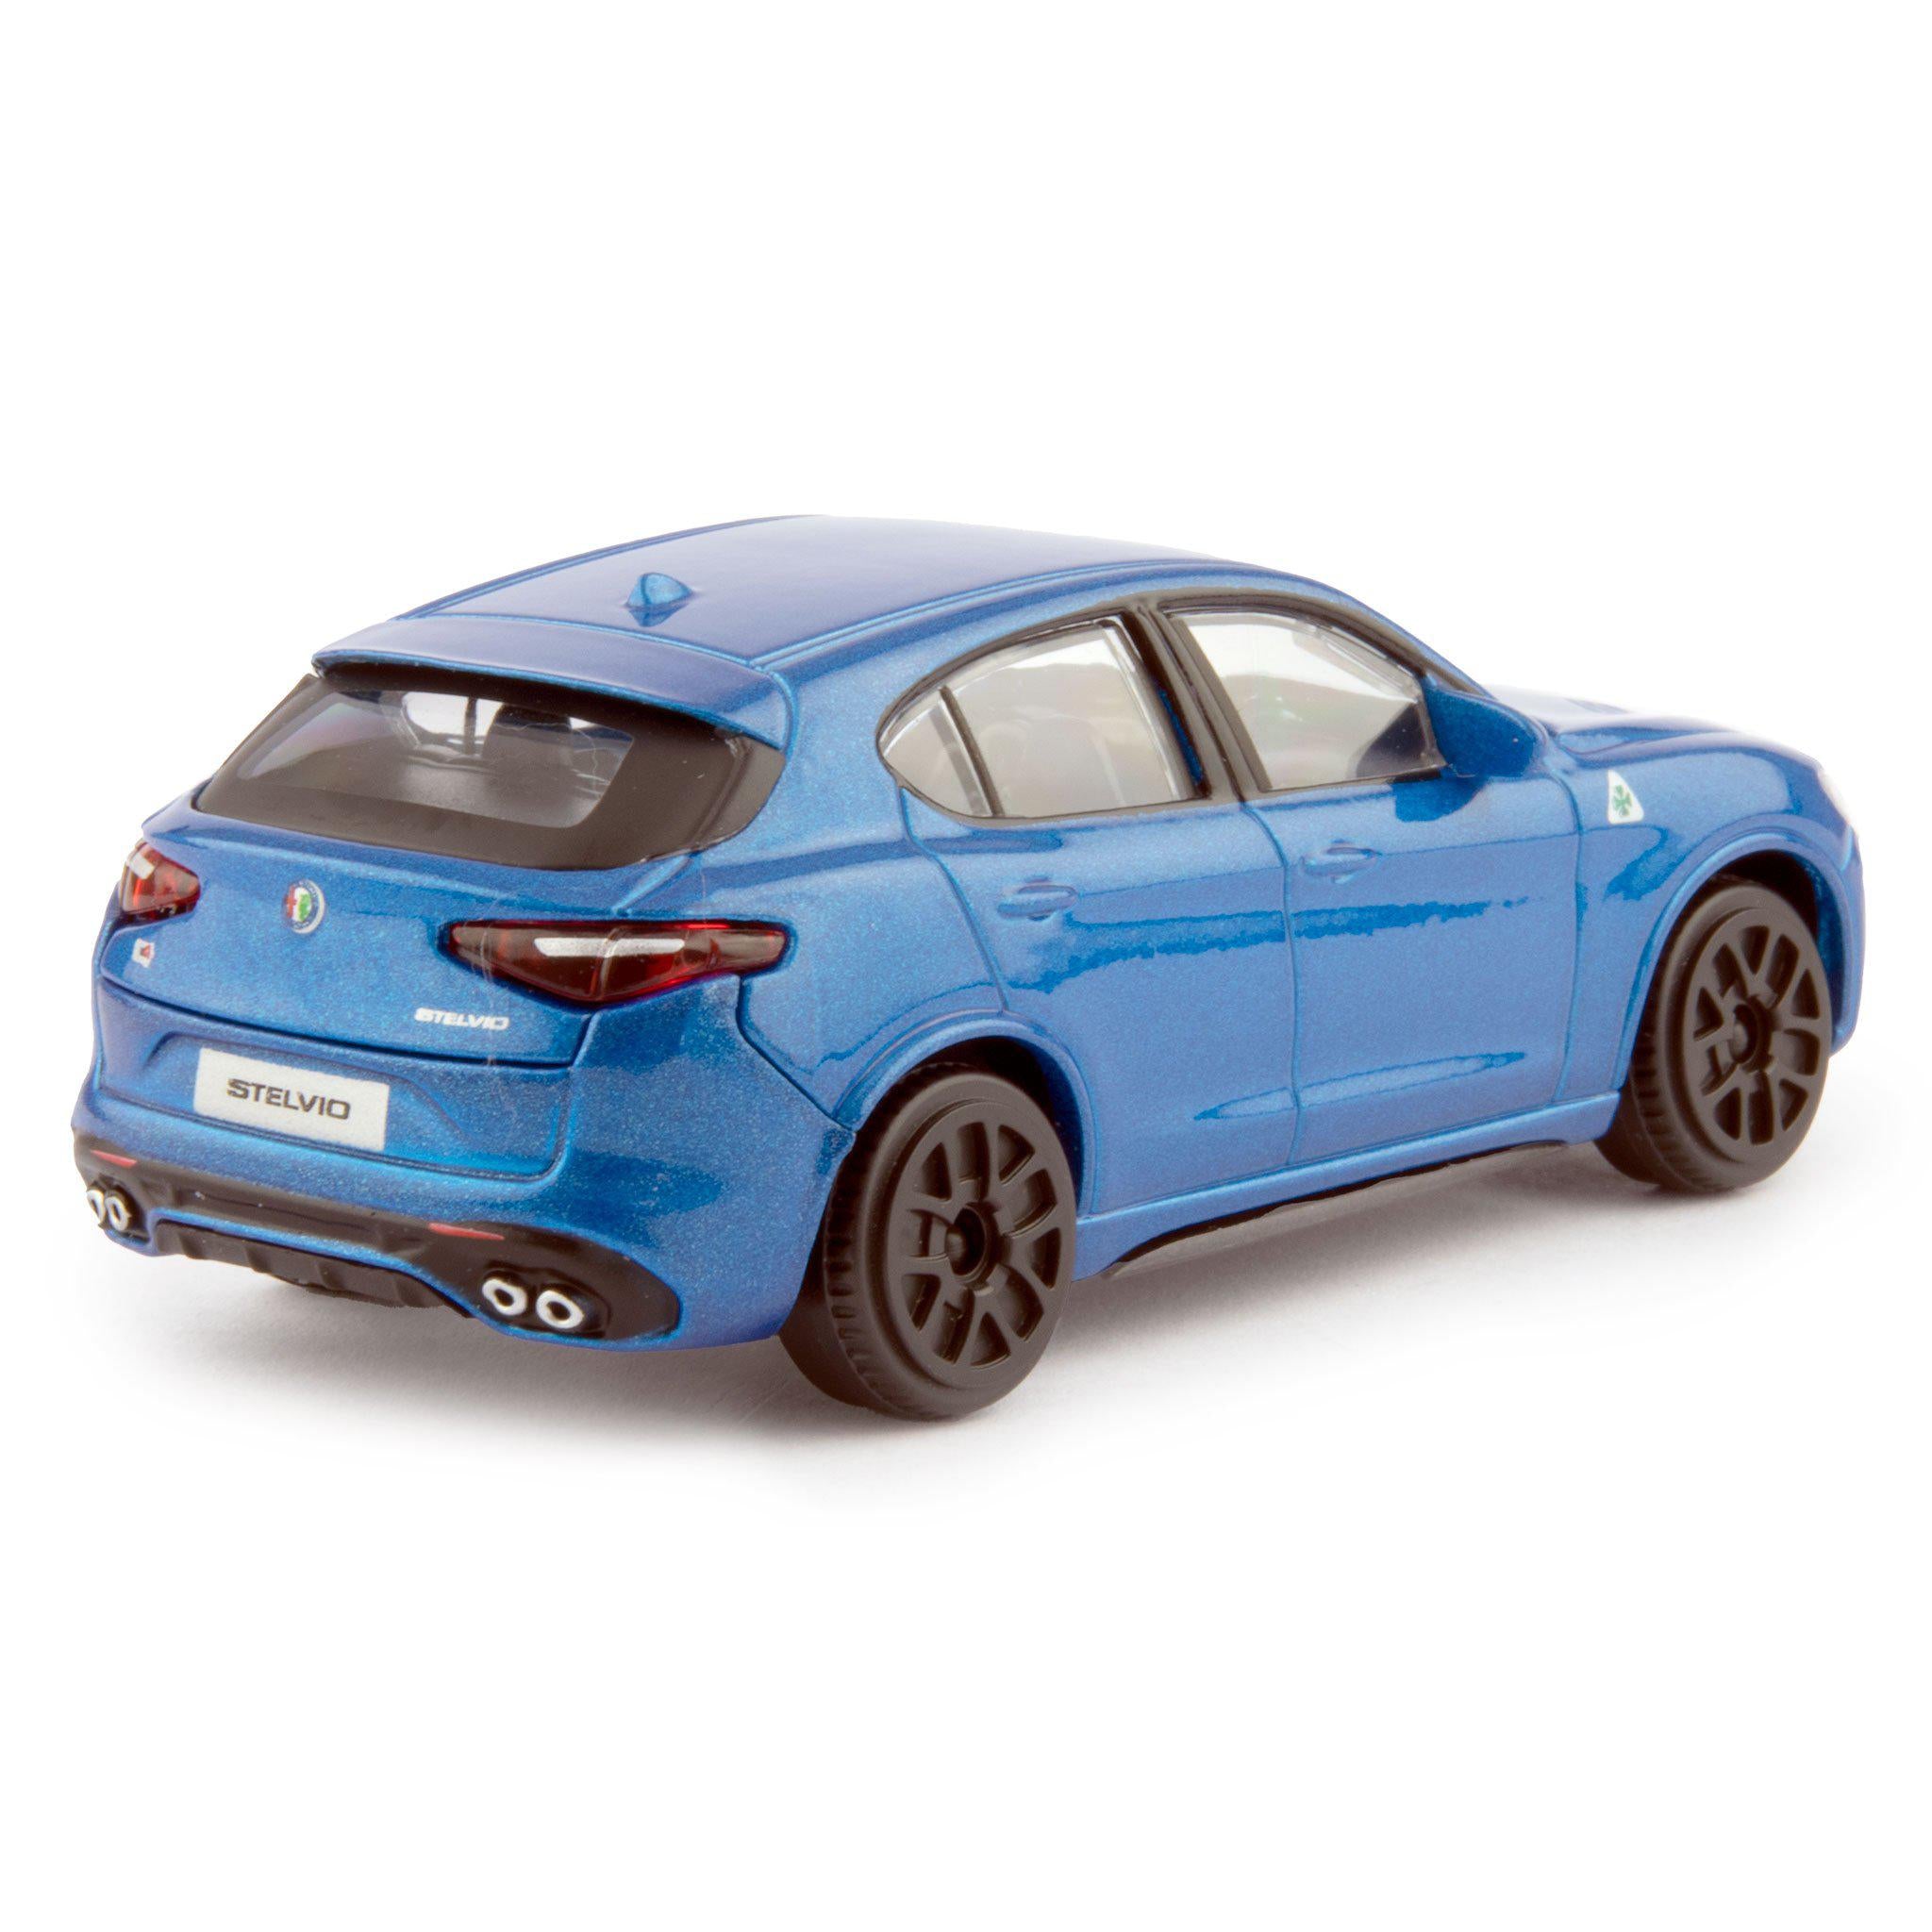 Alfa Romeo Stelvio Diecast Toy Car blue - 1:43 Scale-Bburago-Diecast Model Centre